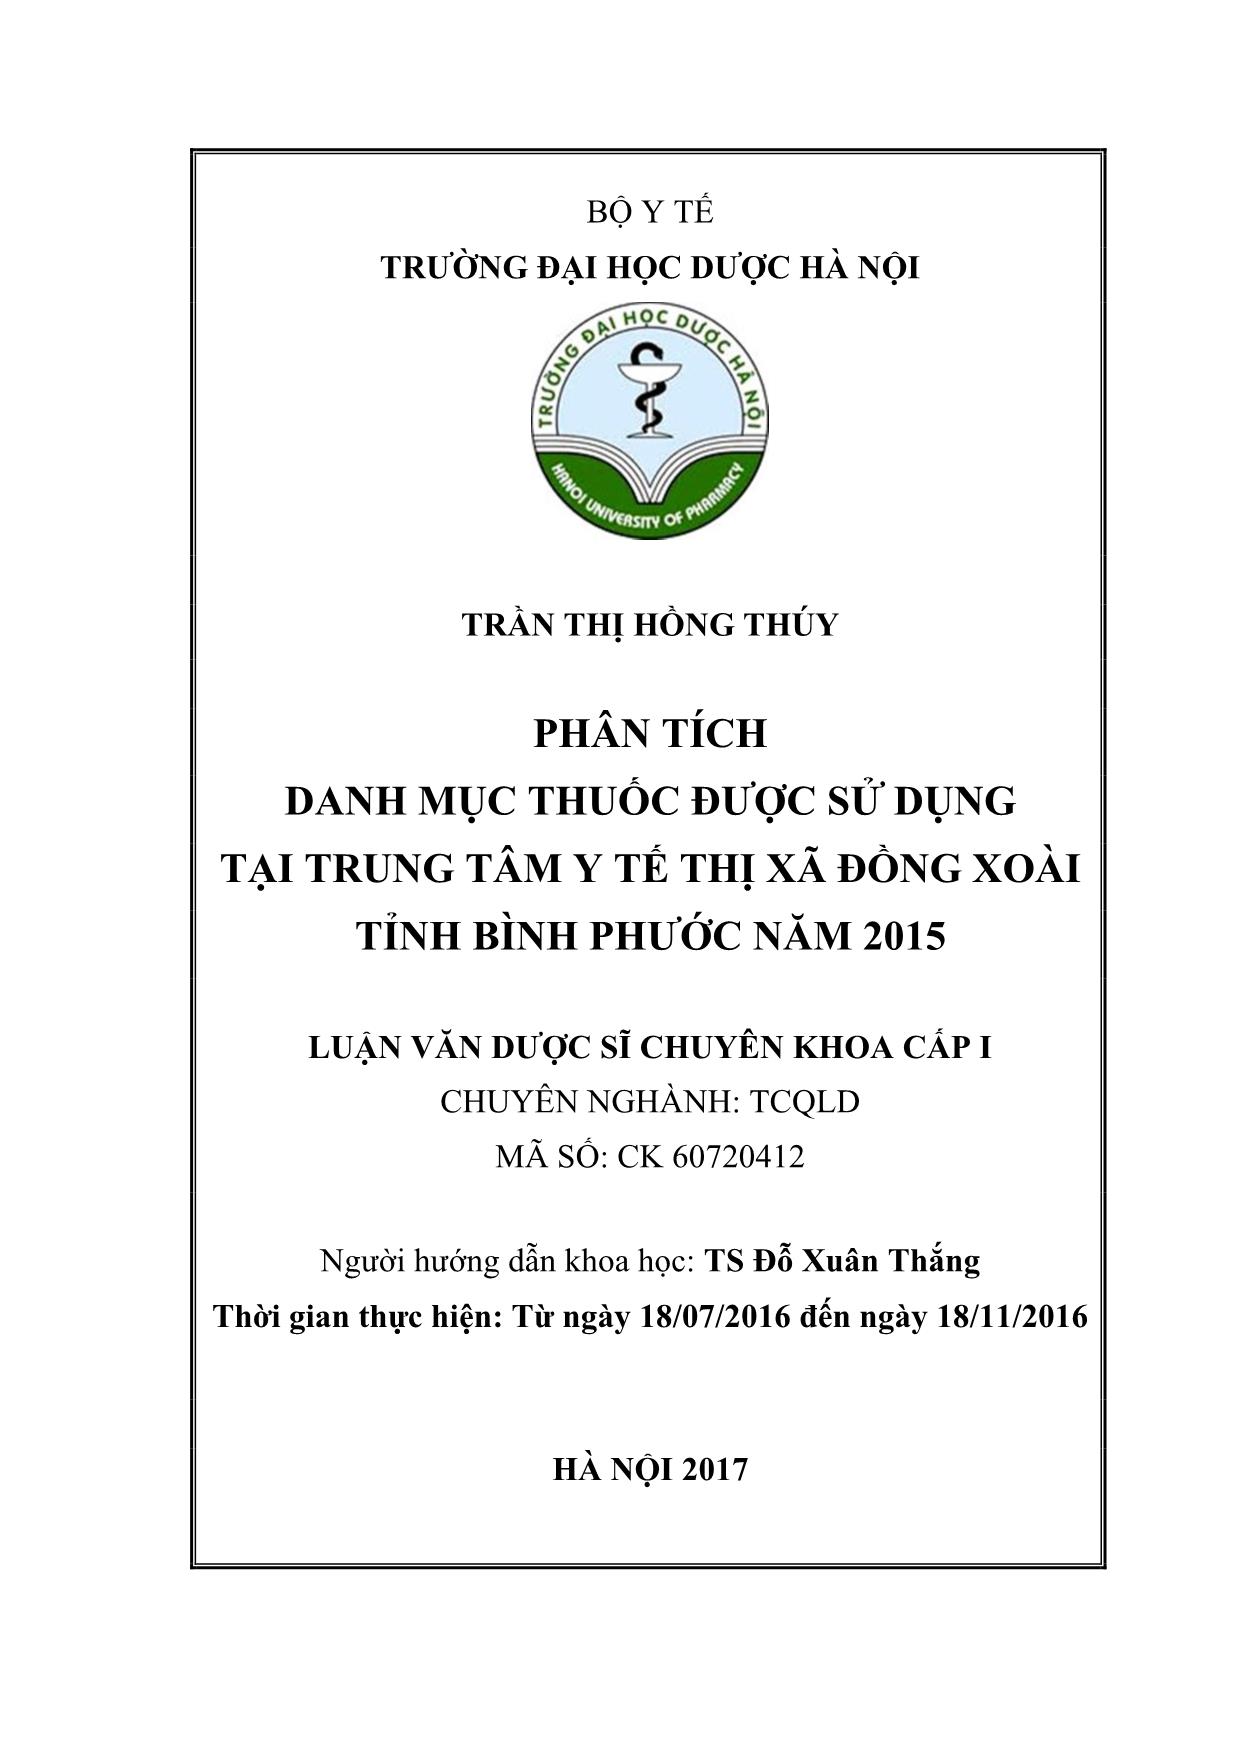 Phân tích danh mục thuốc được sử dụng tại trung tâm y tế thị xã Đồng xoài tỉnh Bình phước năm 2015 trang 2